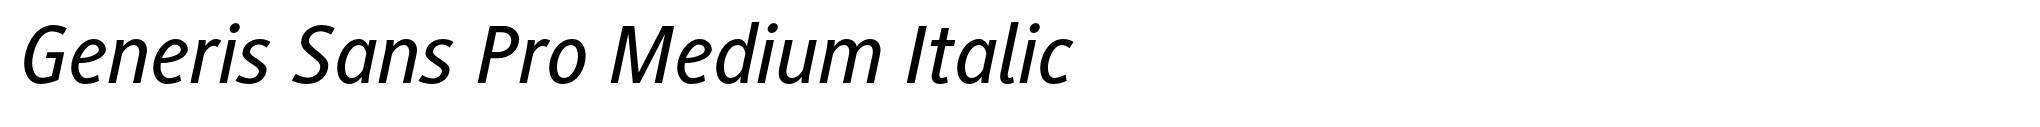 Generis Sans Pro Medium Italic image